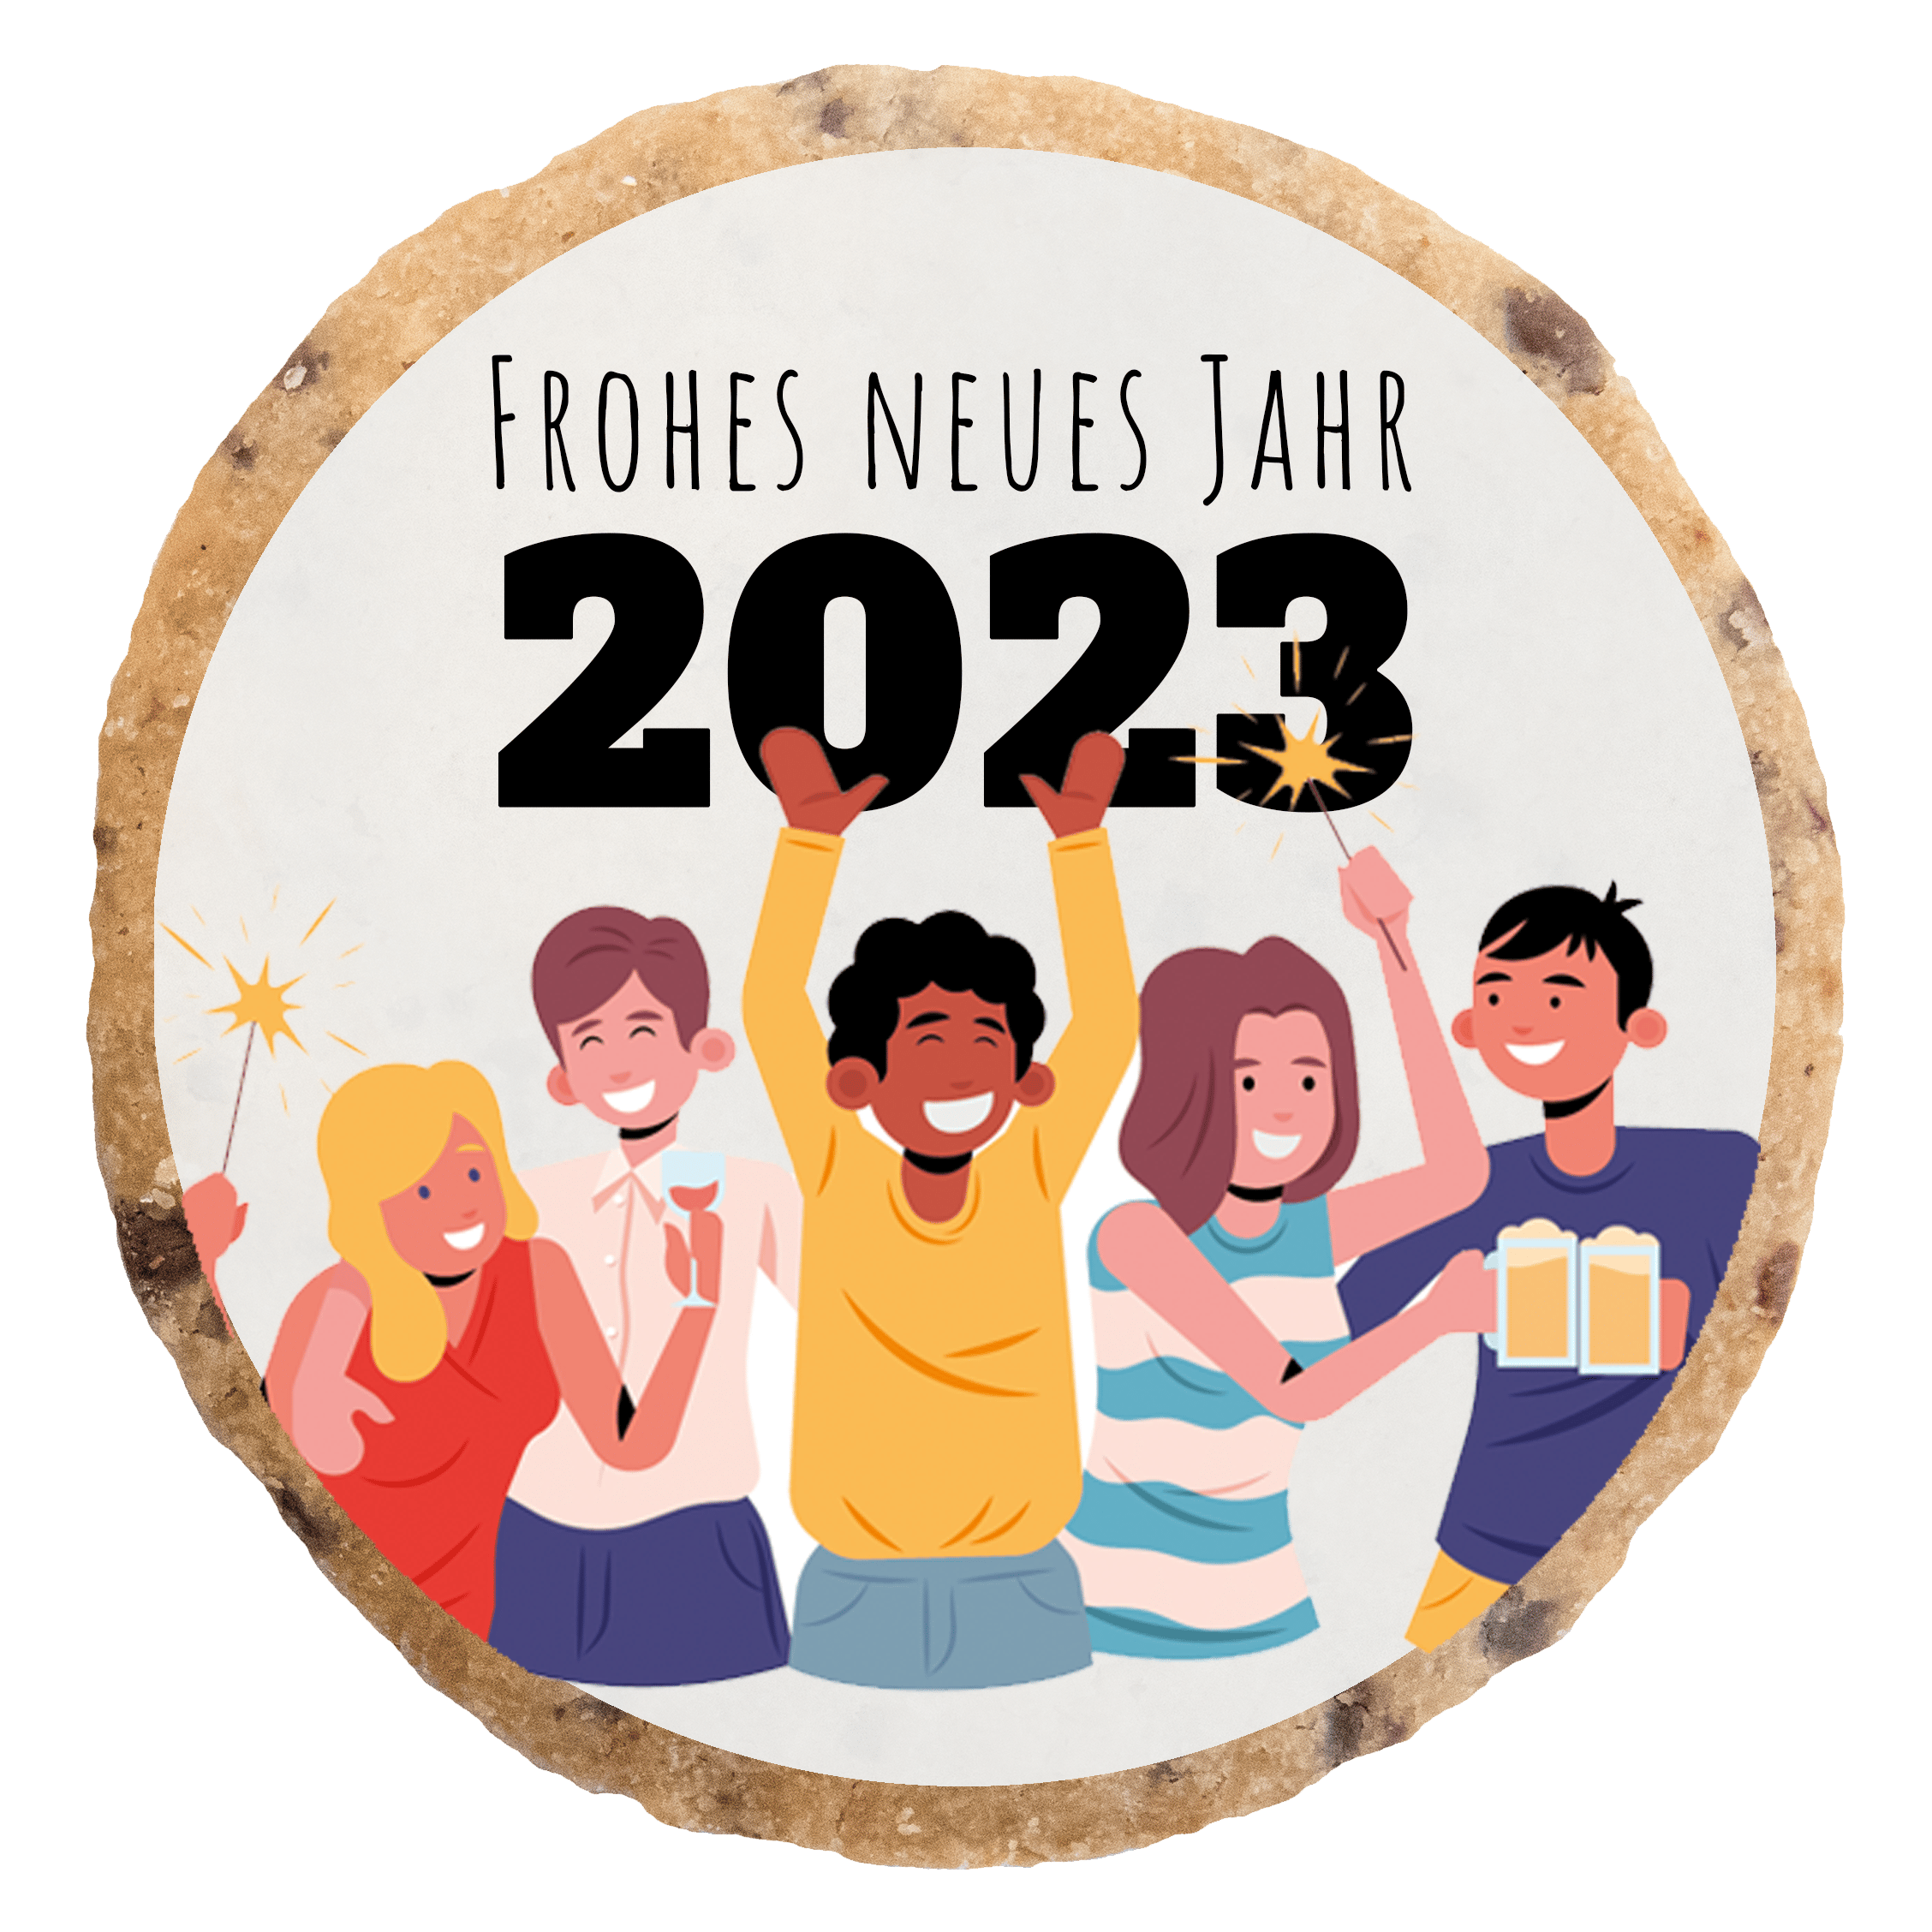 "Frohes Neues Jahr 2023" MotivKEKS